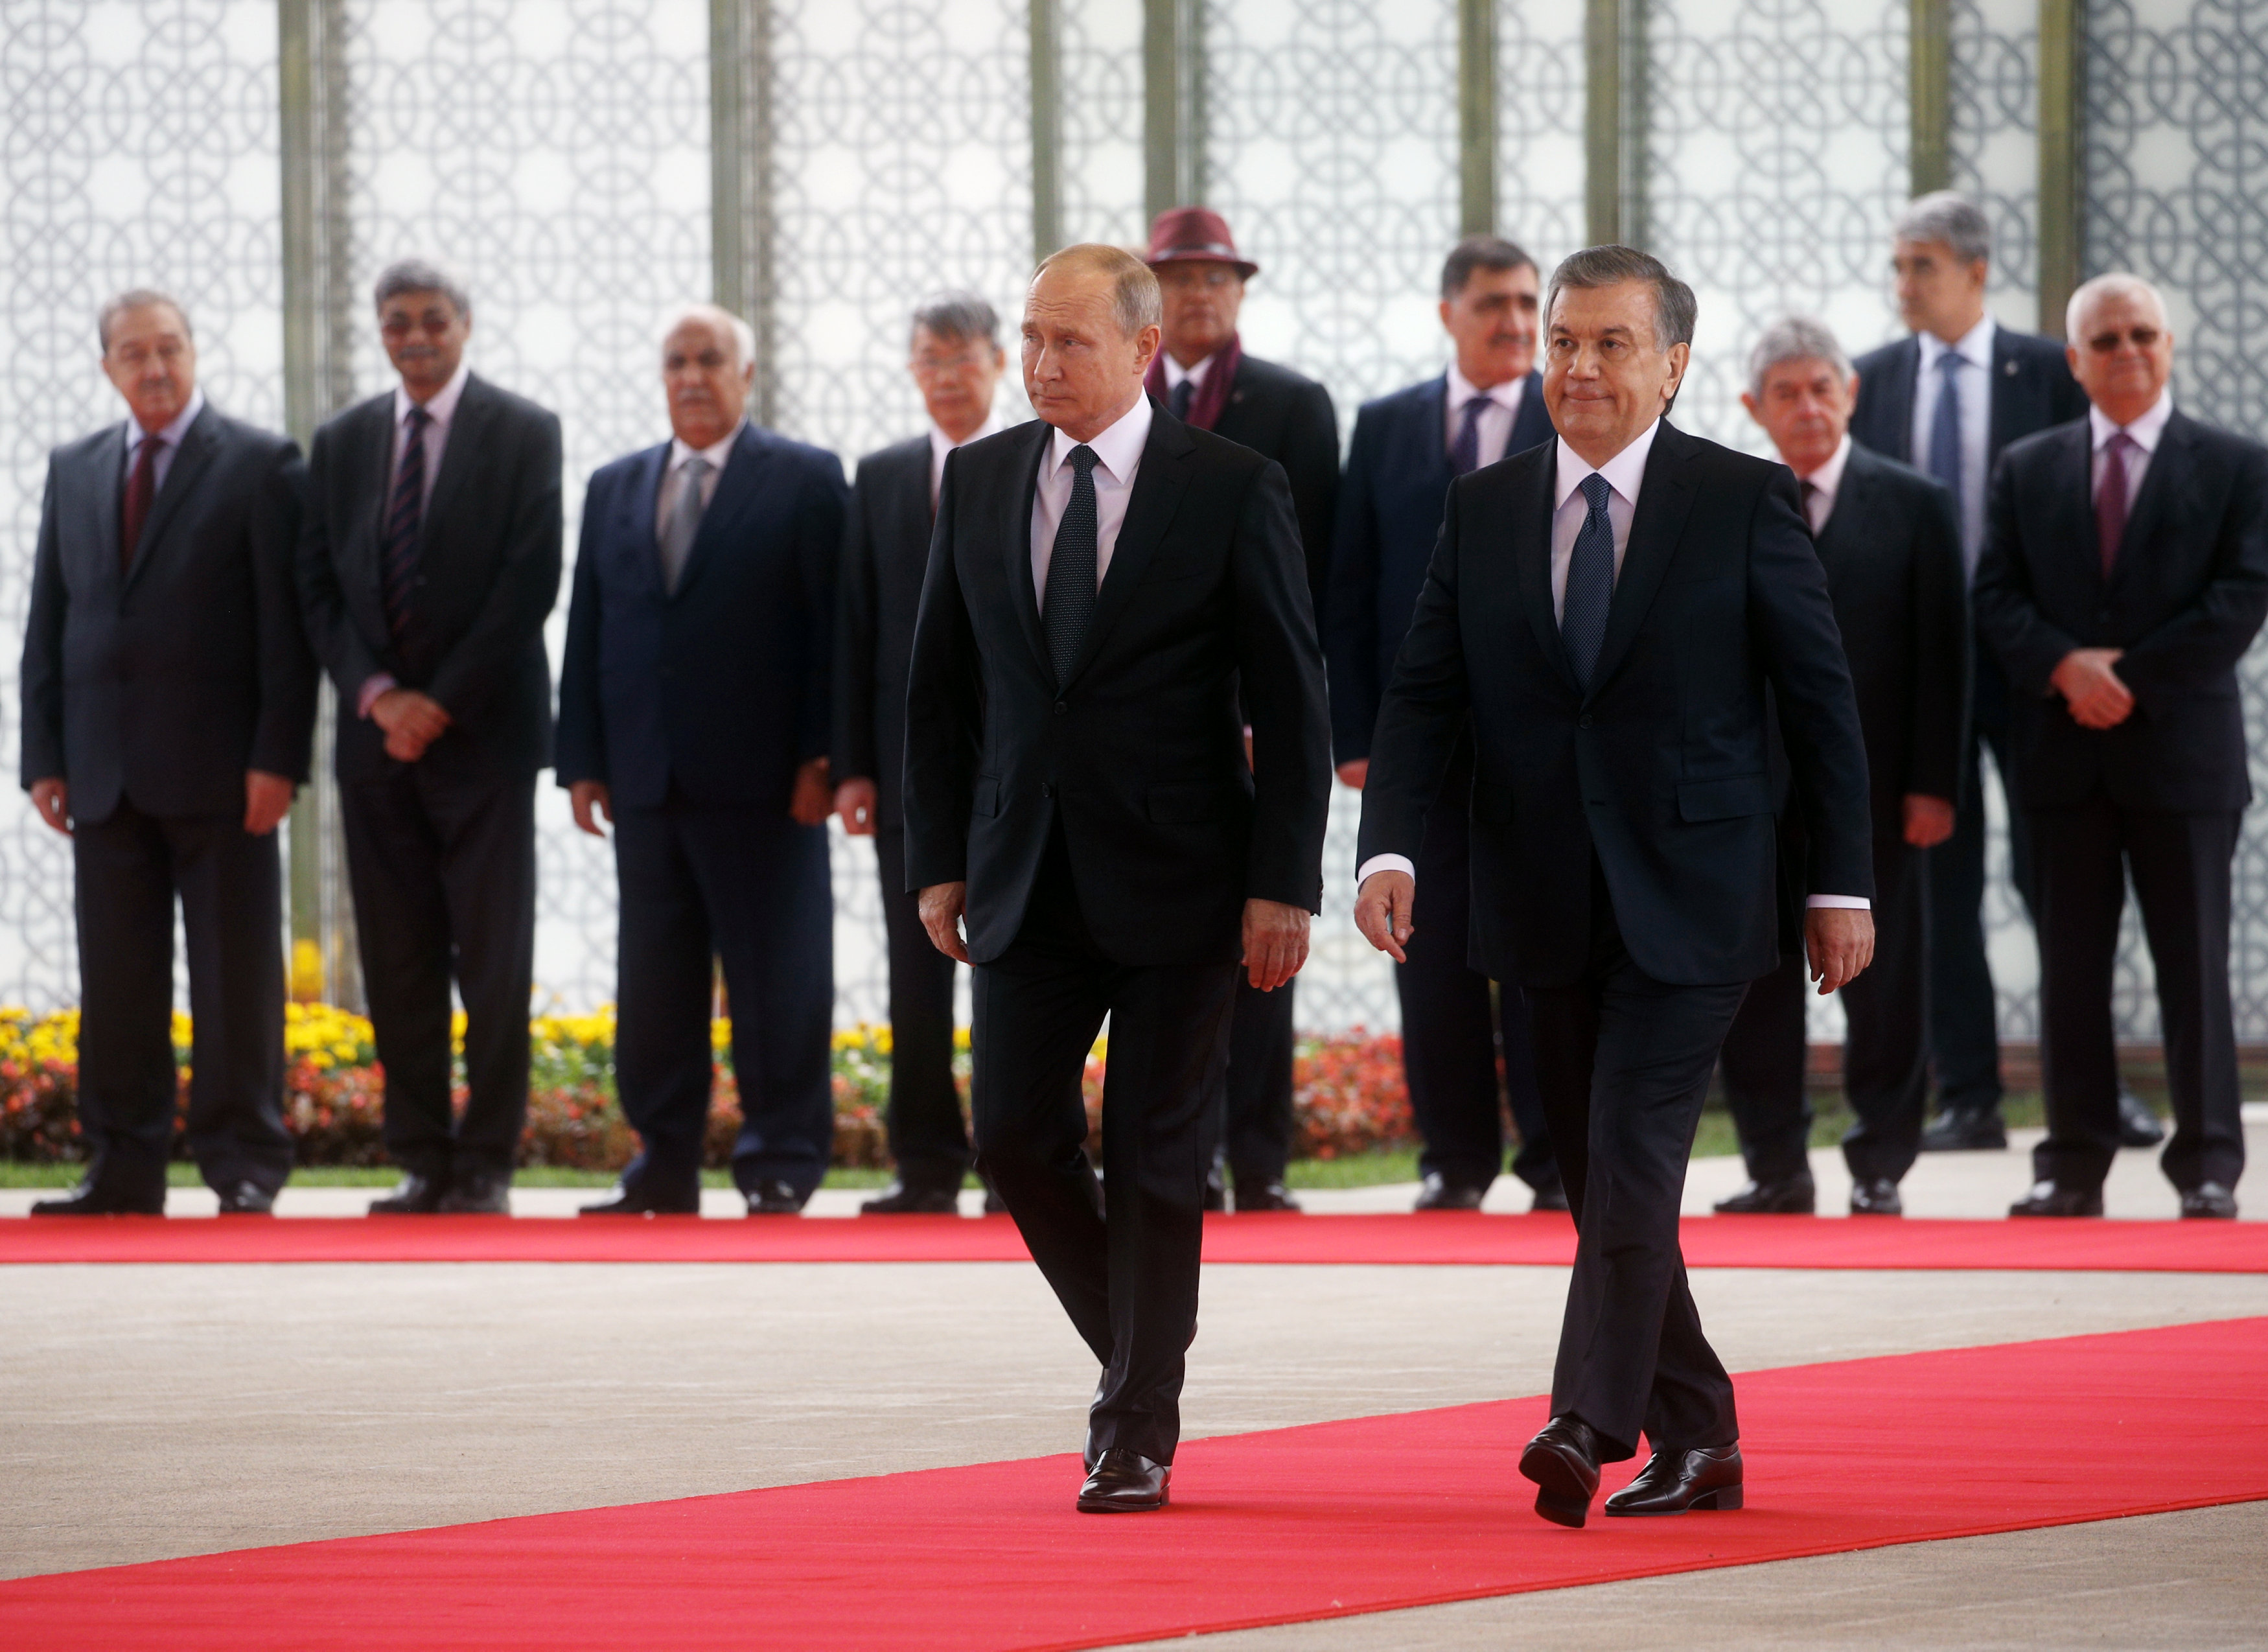 الرئيس الأوزبكى يستقبل بوتين